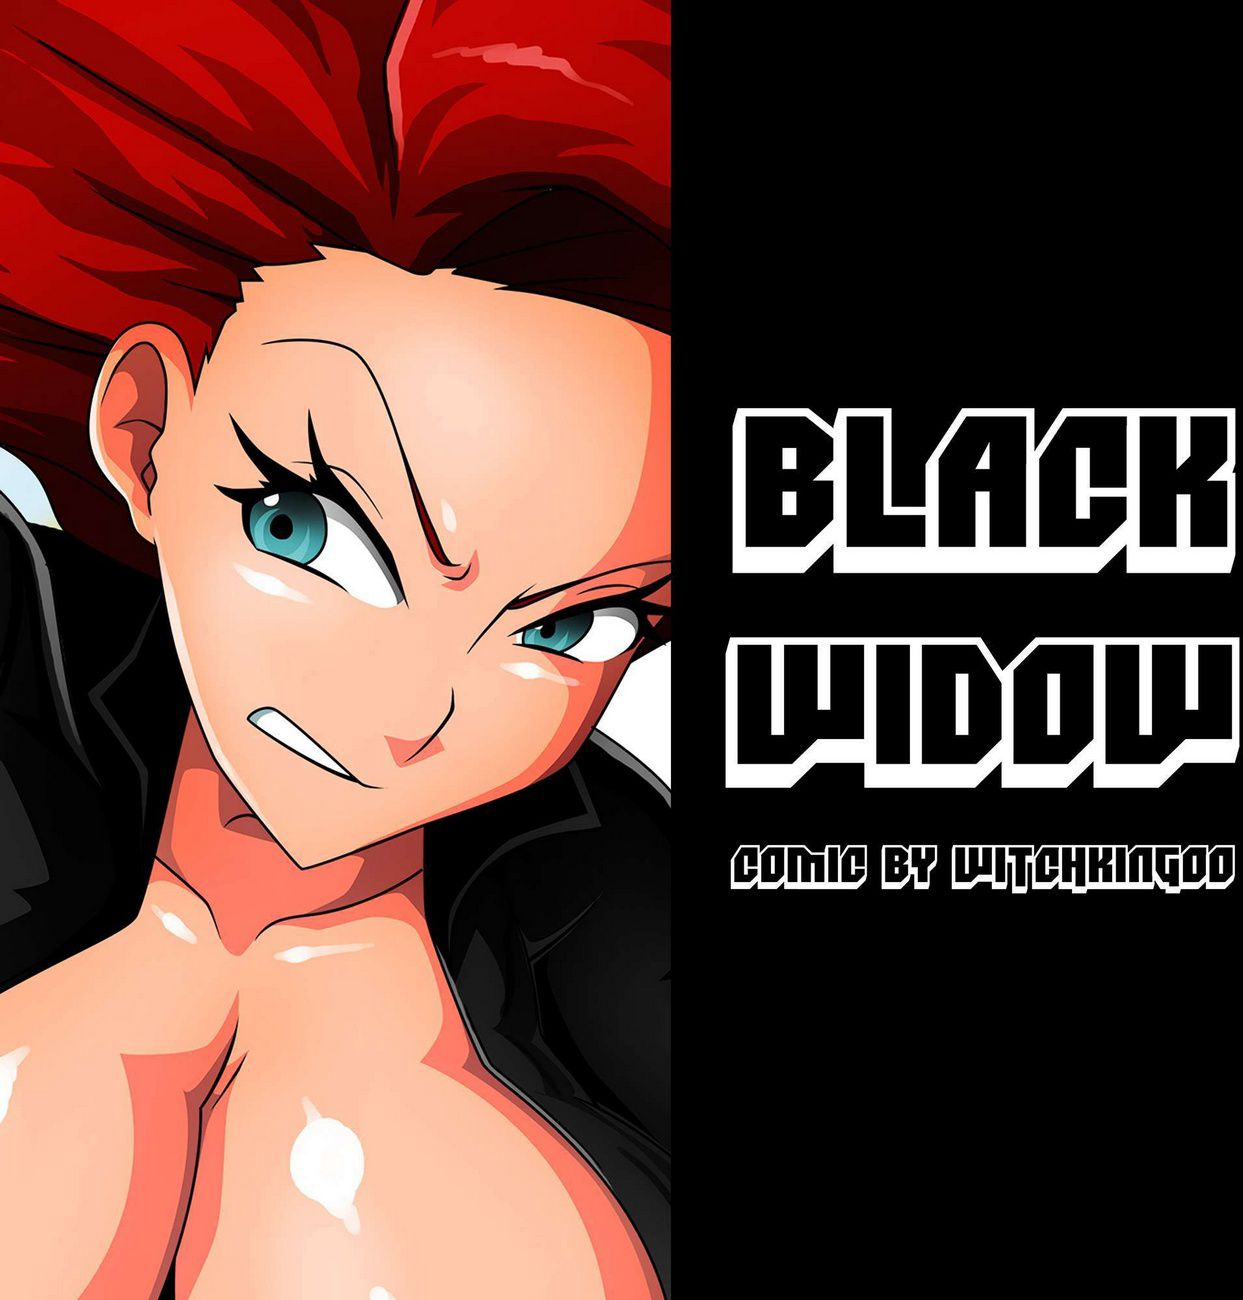 Black widow witchking00